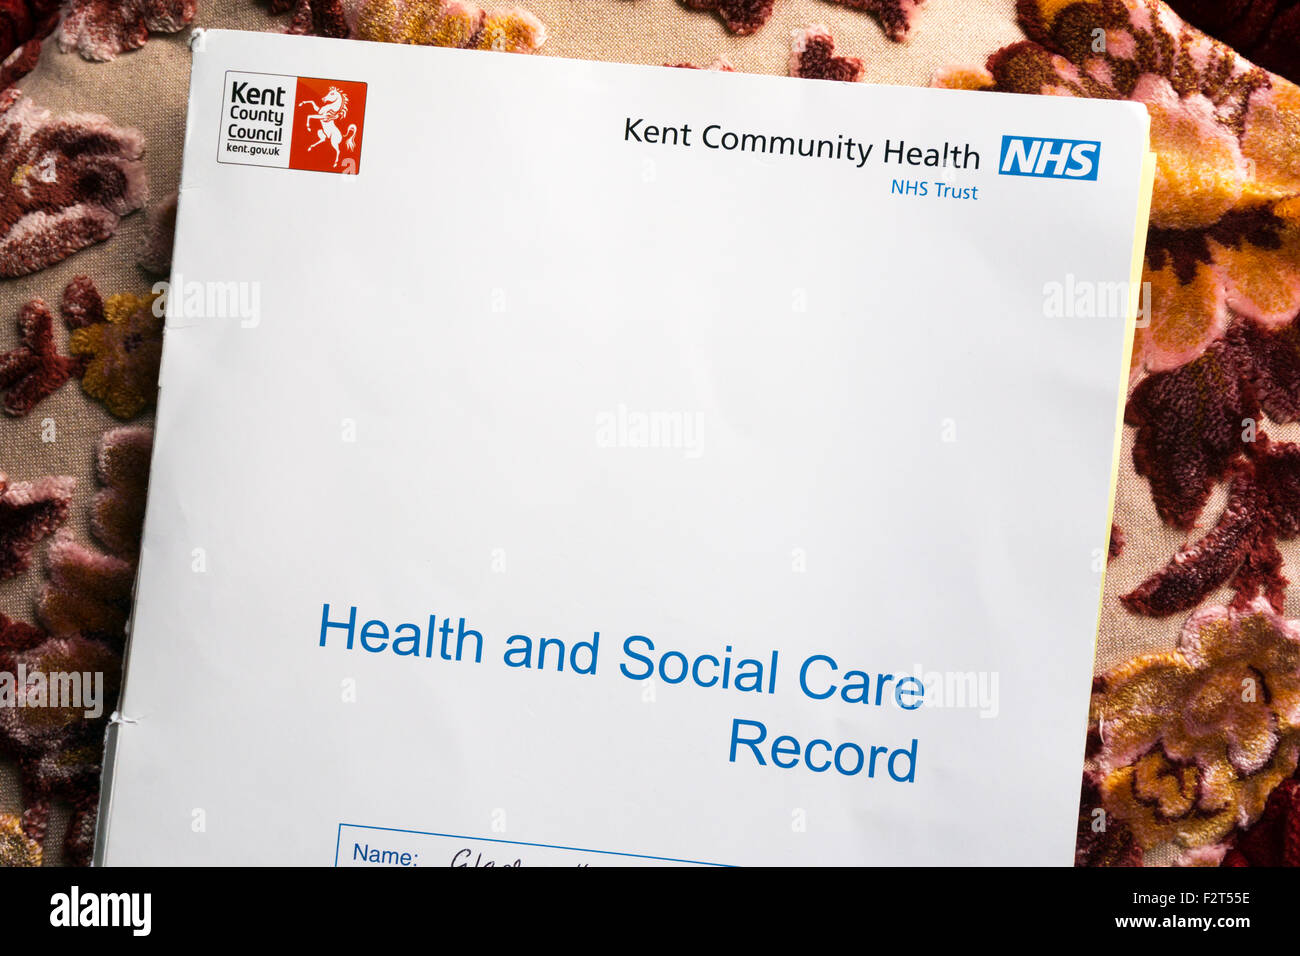 Eine Reihe von Gesundheits- und sozialen Betreuung Datensätze für eine ältere Dame, ein Patient von der Kent Community Health NHS Trust. Stockfoto